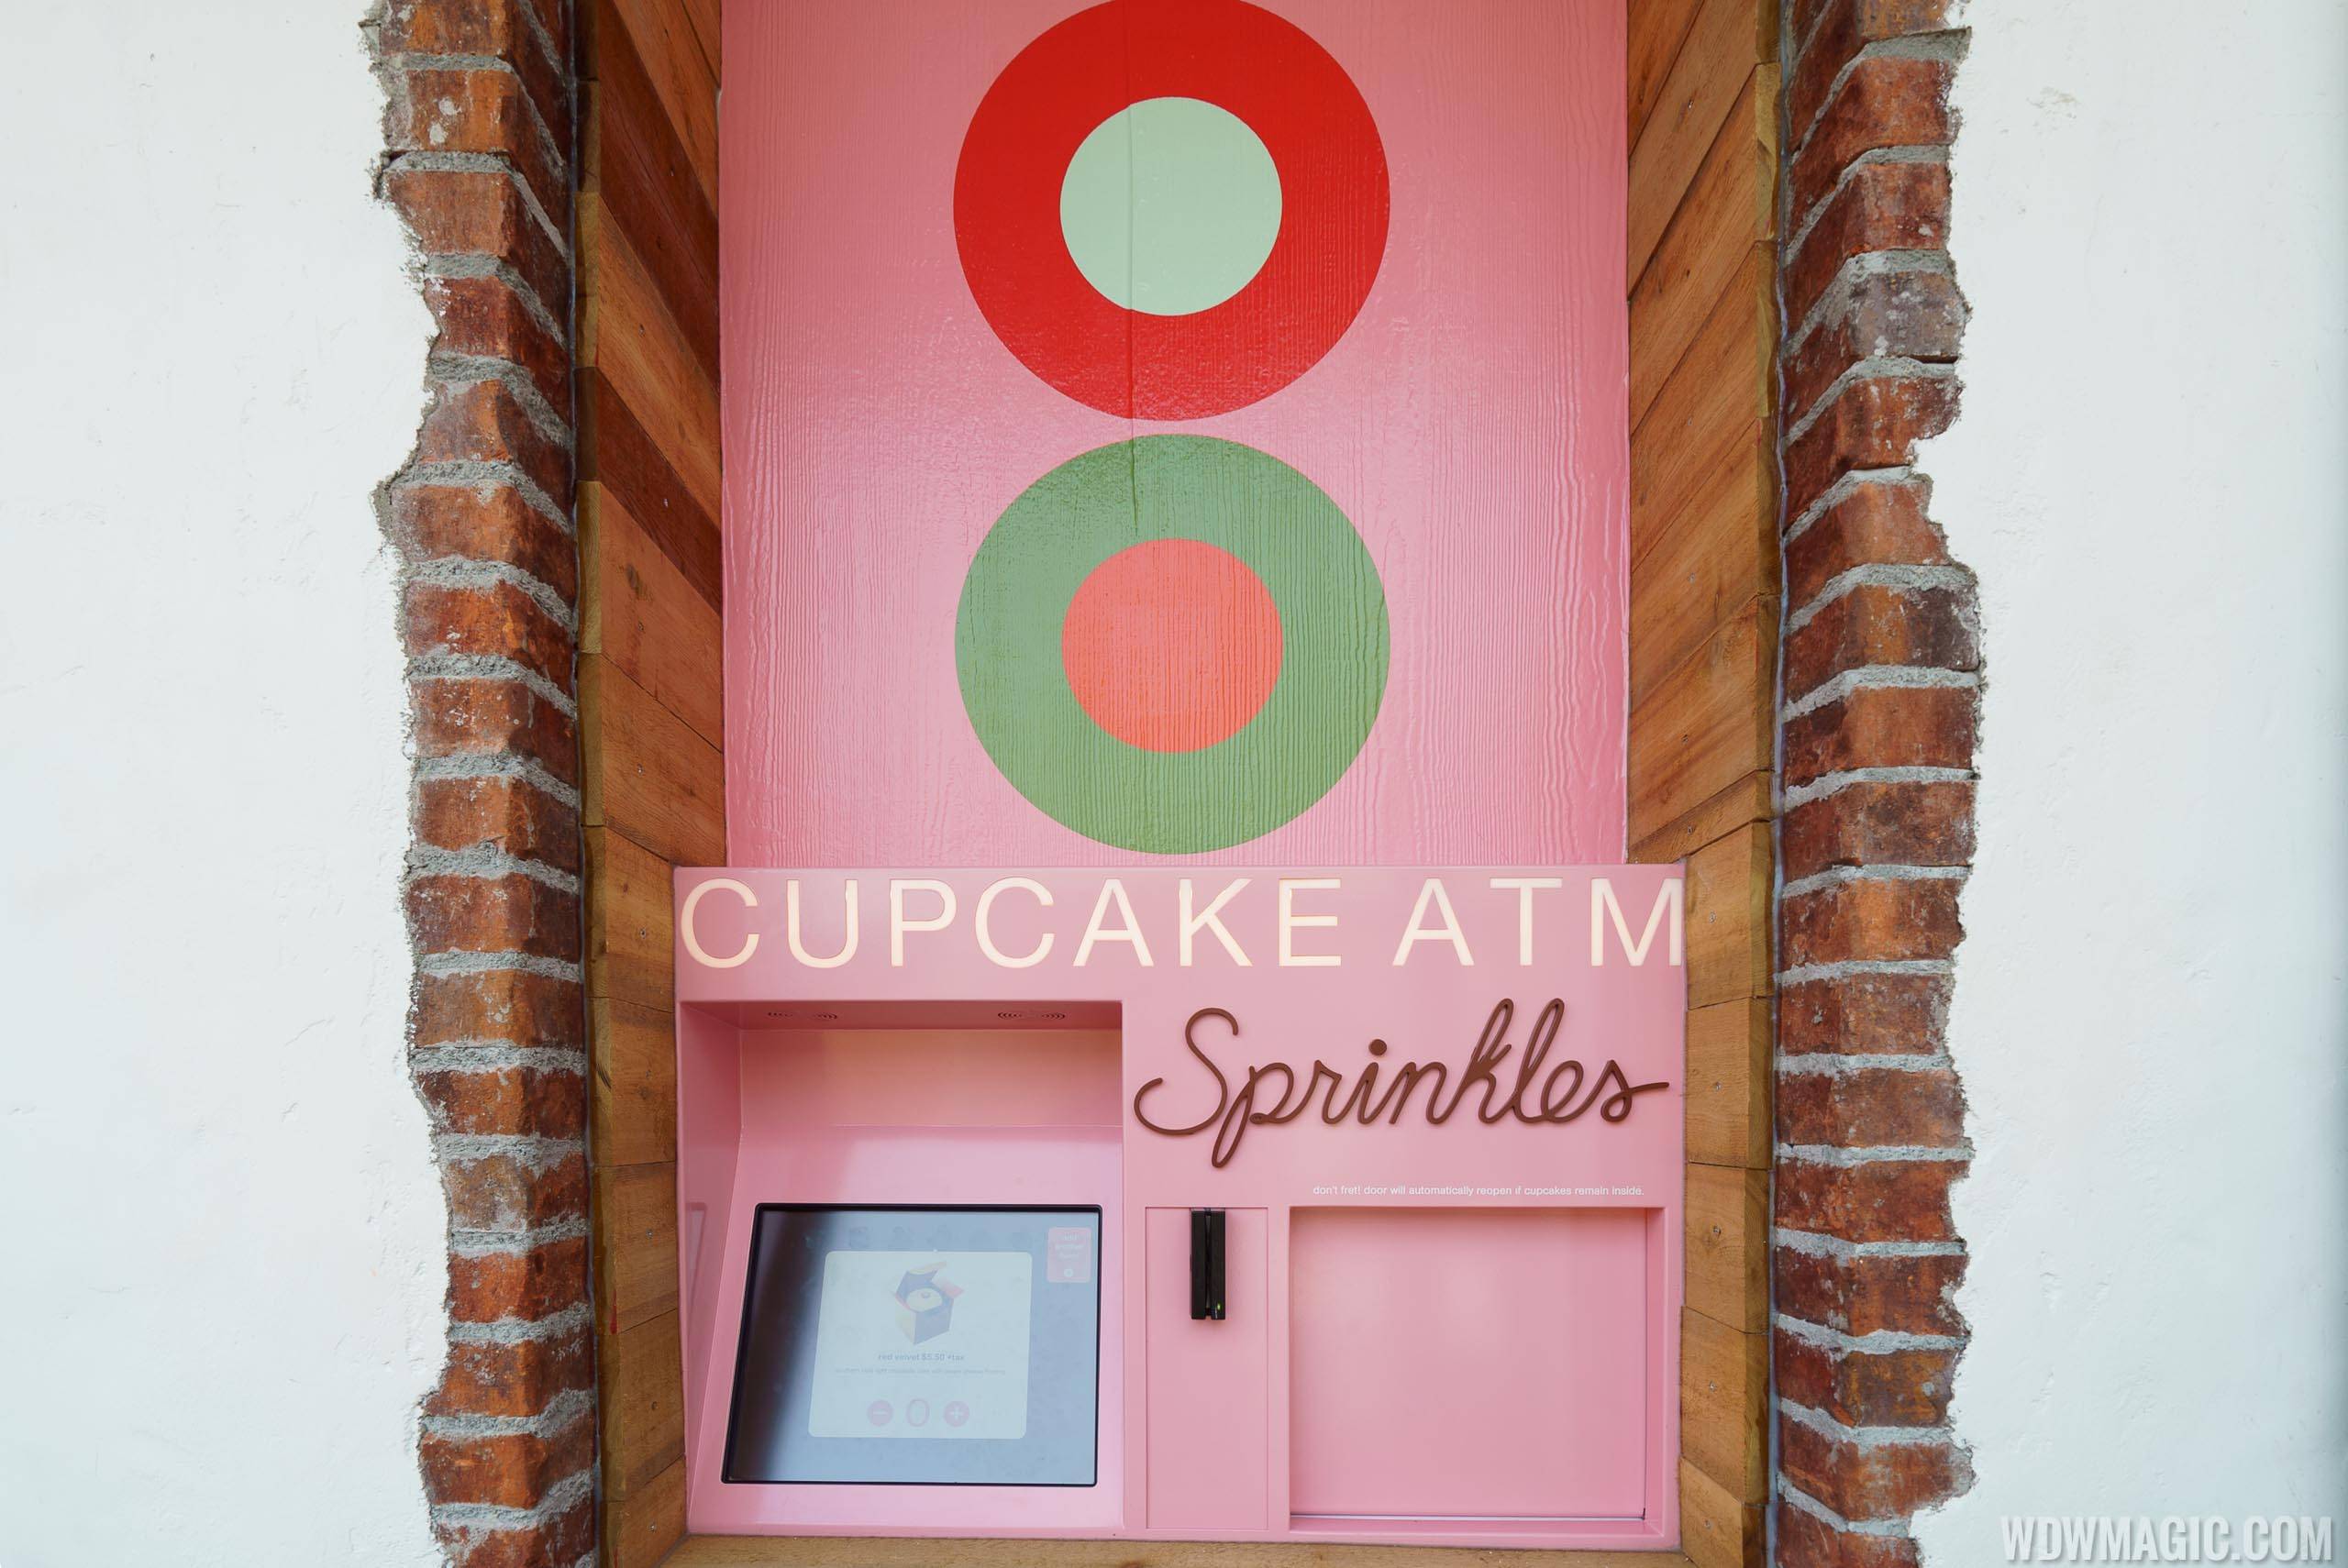 Cupcake ATM at Sprinkles in Disney Springs